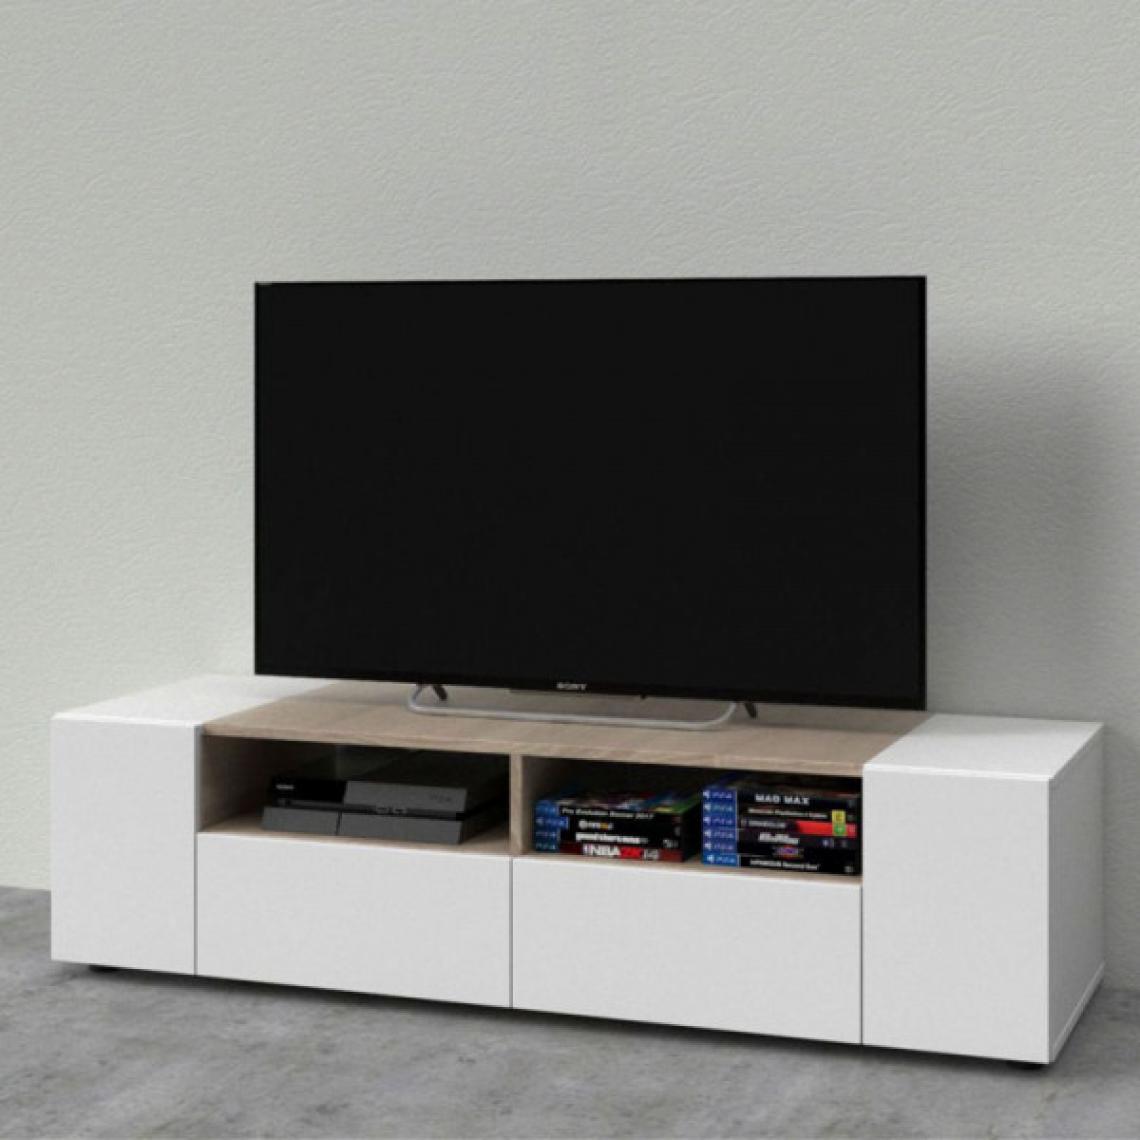 Dansmamaison - Meuble TV 4 portes Blanc/Chêne - MIKATO - L 138 x l 42 x H 36 cm - Meubles TV, Hi-Fi